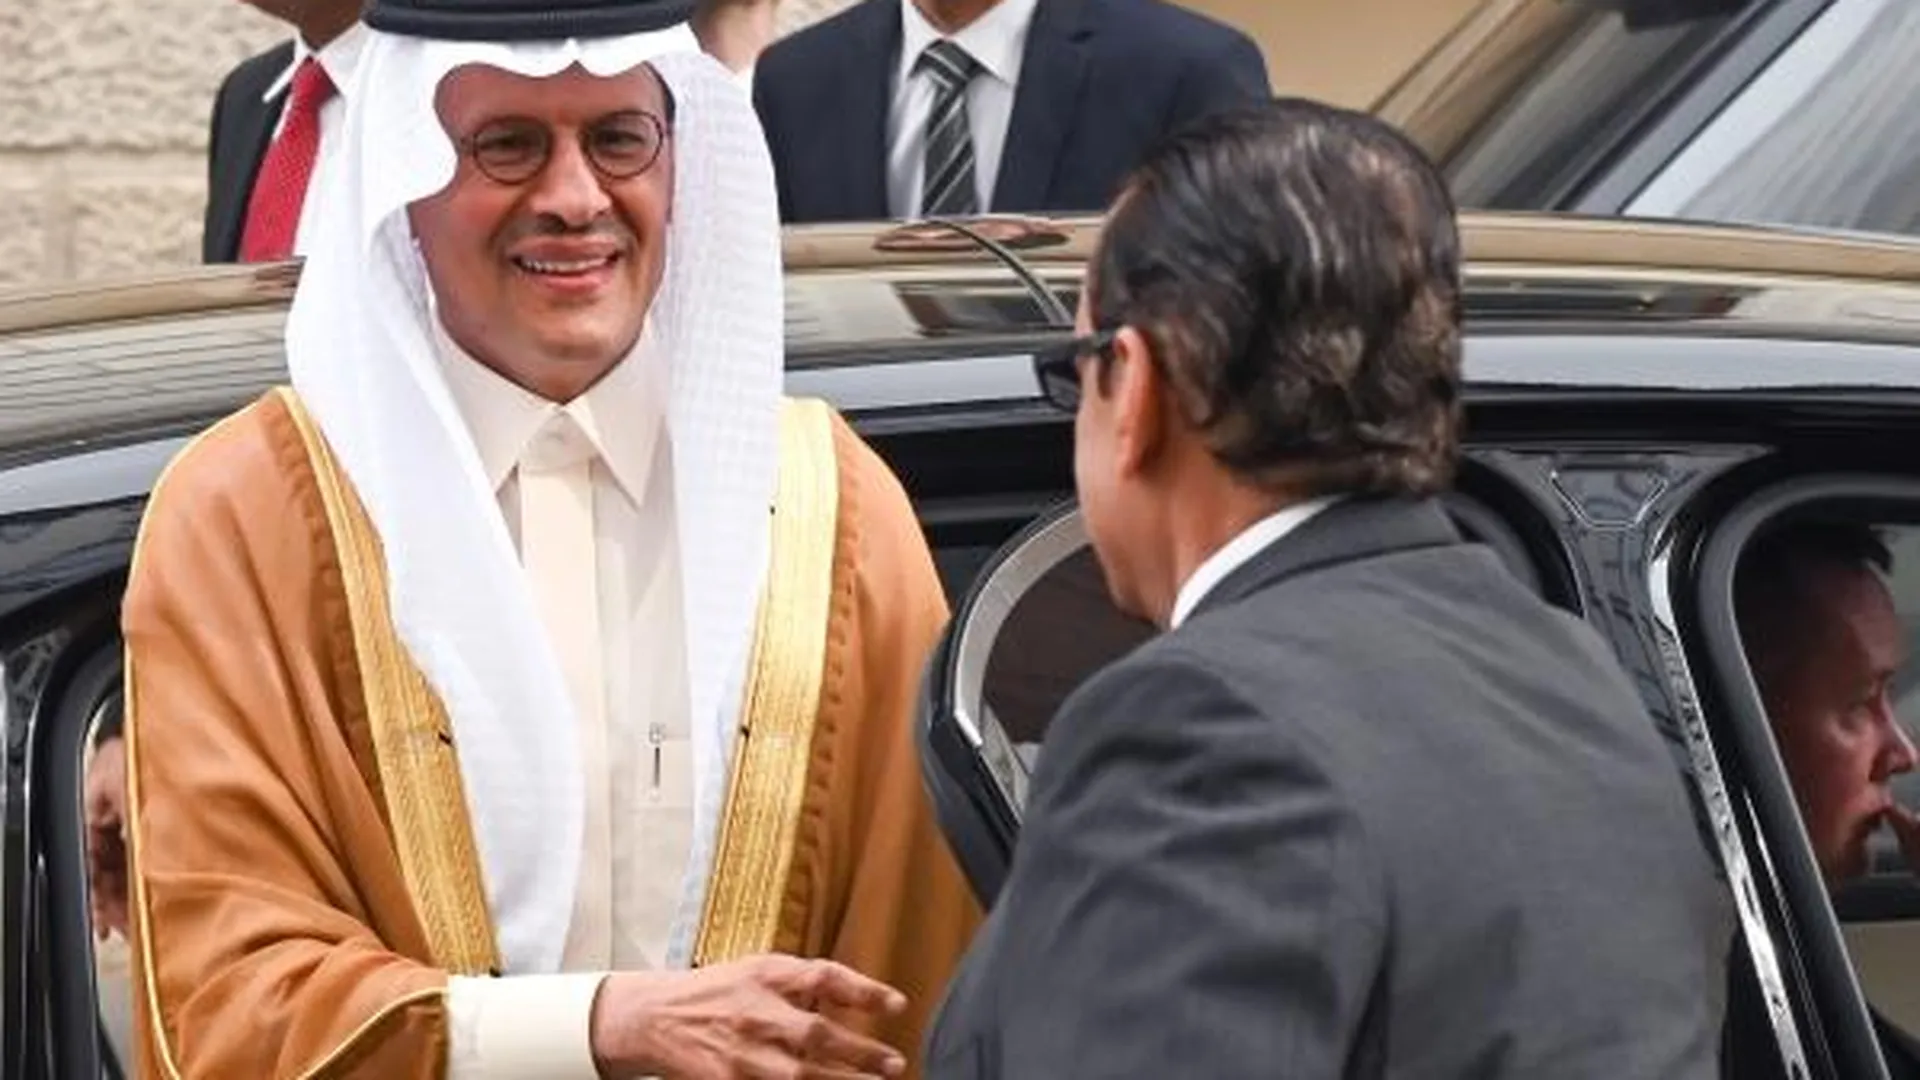 Саудовский принц перед встречей министров стран — участниц ОПЕК+. Источник фото: РИА «Новости»